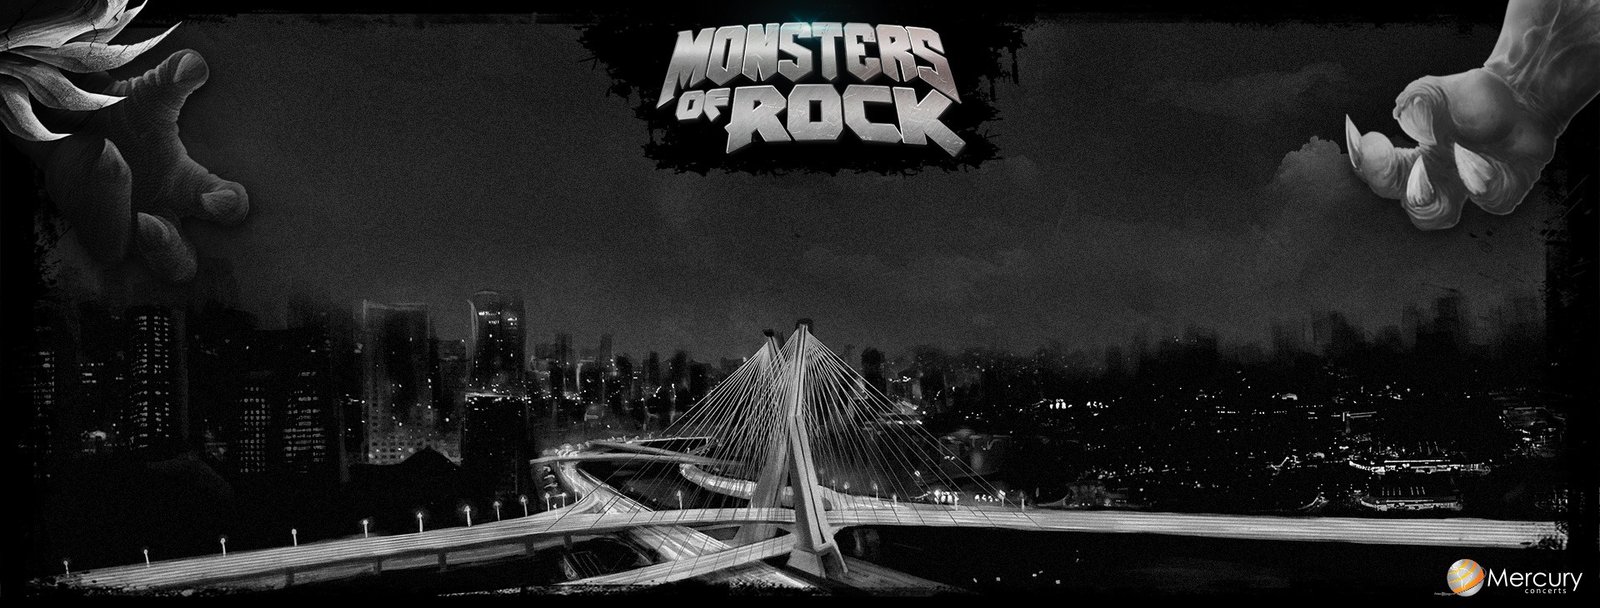 Nova edição do Monsters of Rock ocorre em 2023